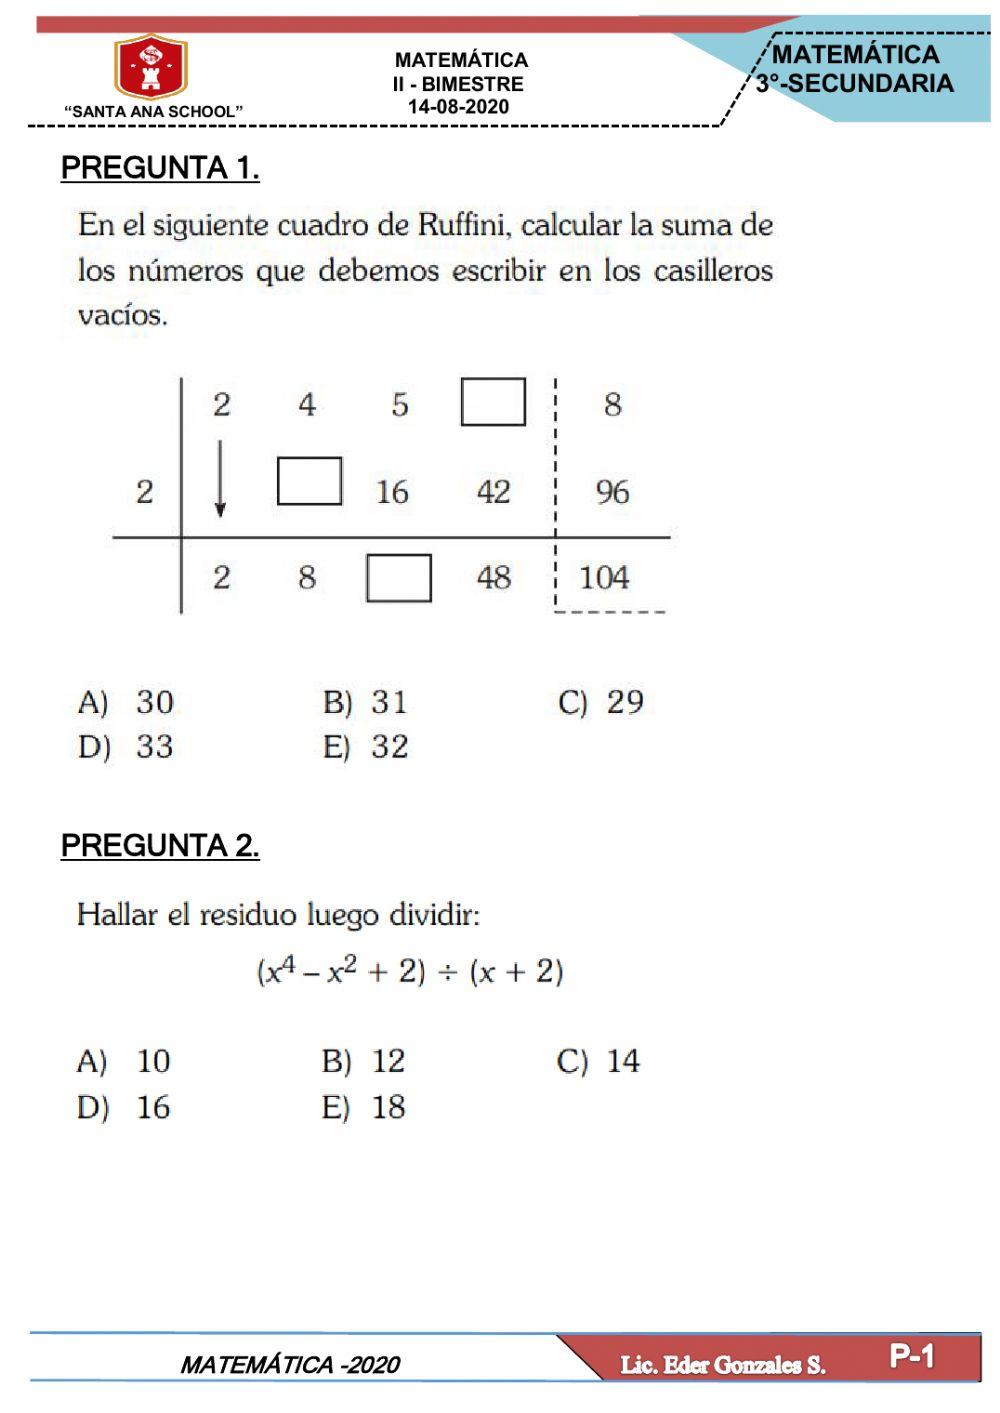 Division algebraica